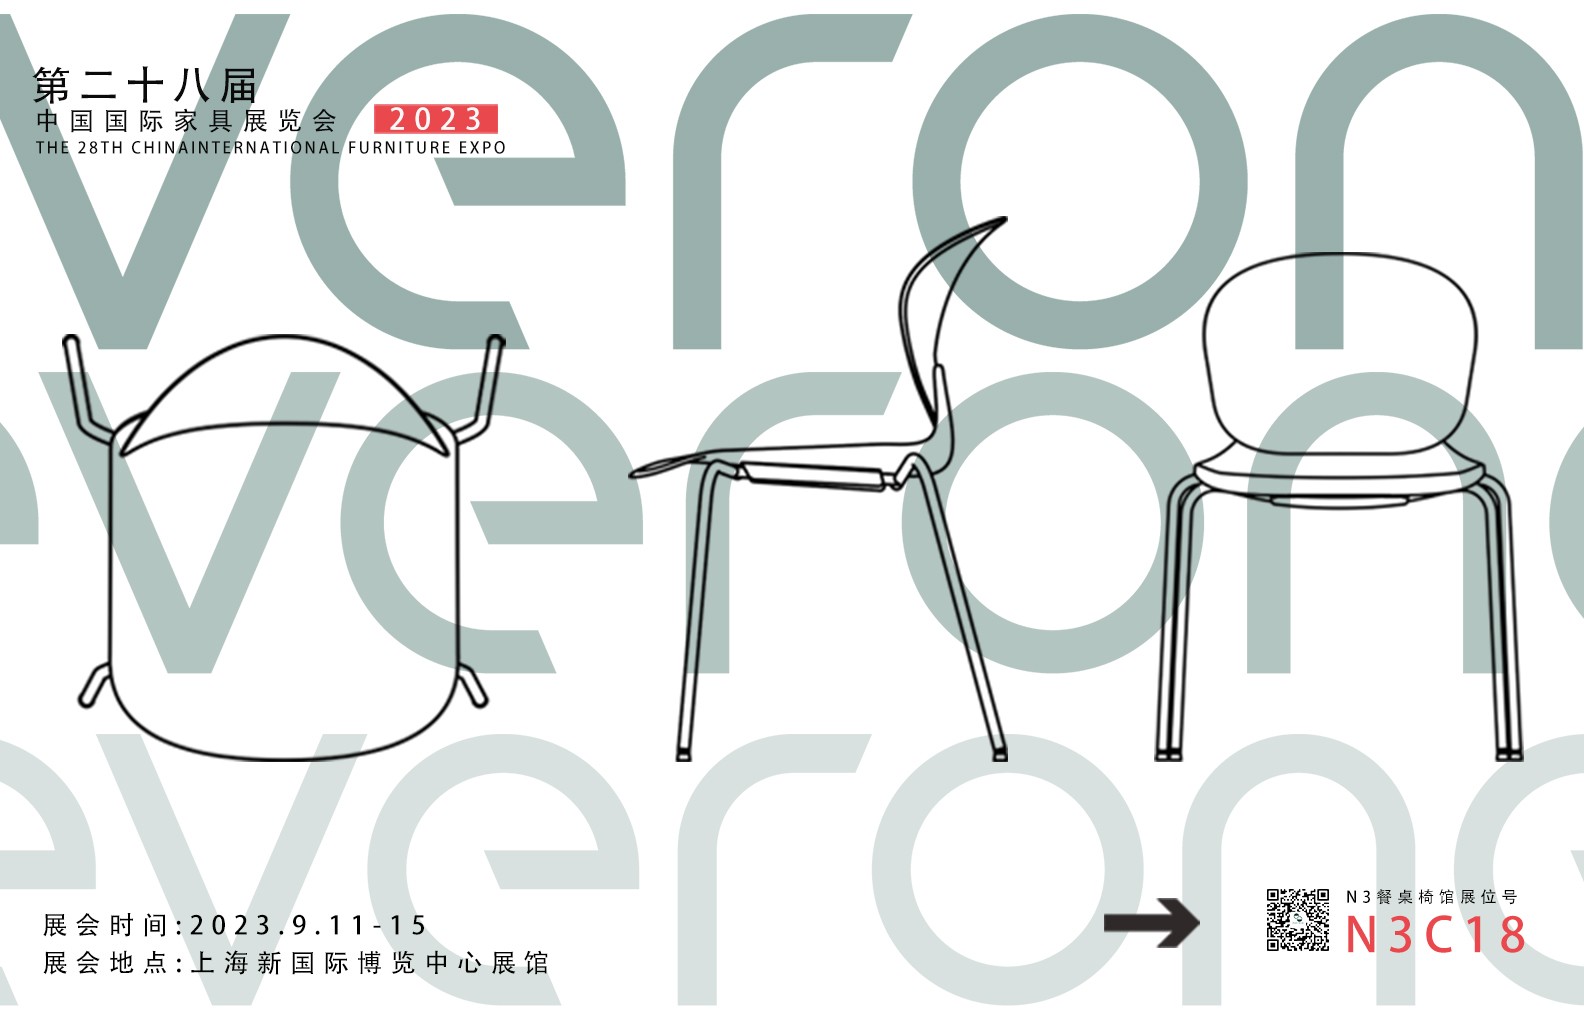 Brand news丨Everone Appears at Guangdong Design Week